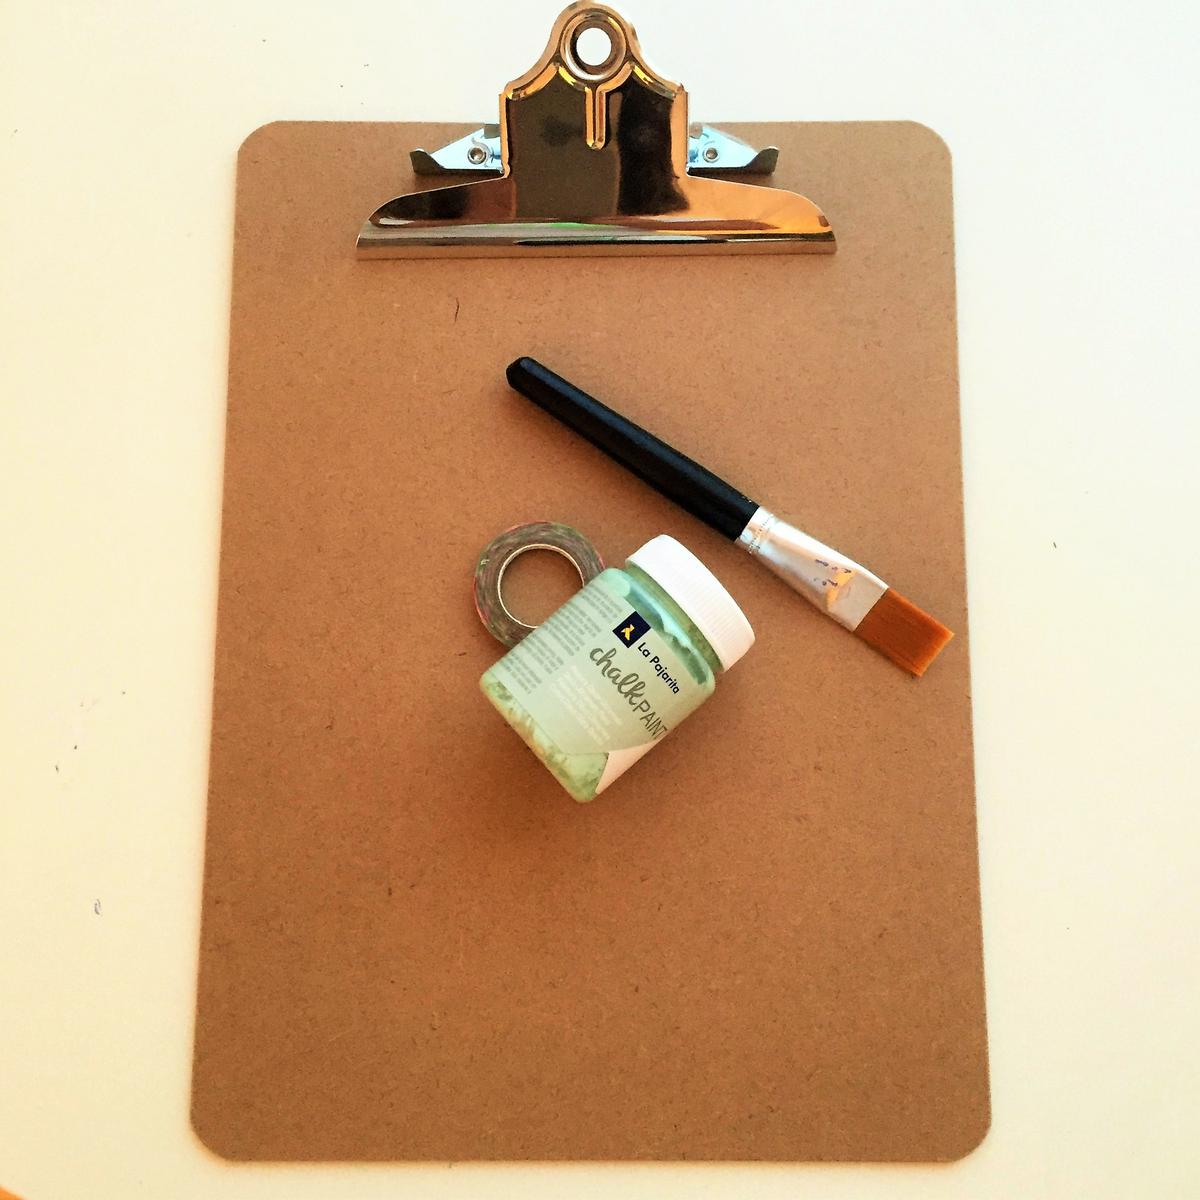 01-clipboard-personalizado-con-chalkpaint-material-necesario